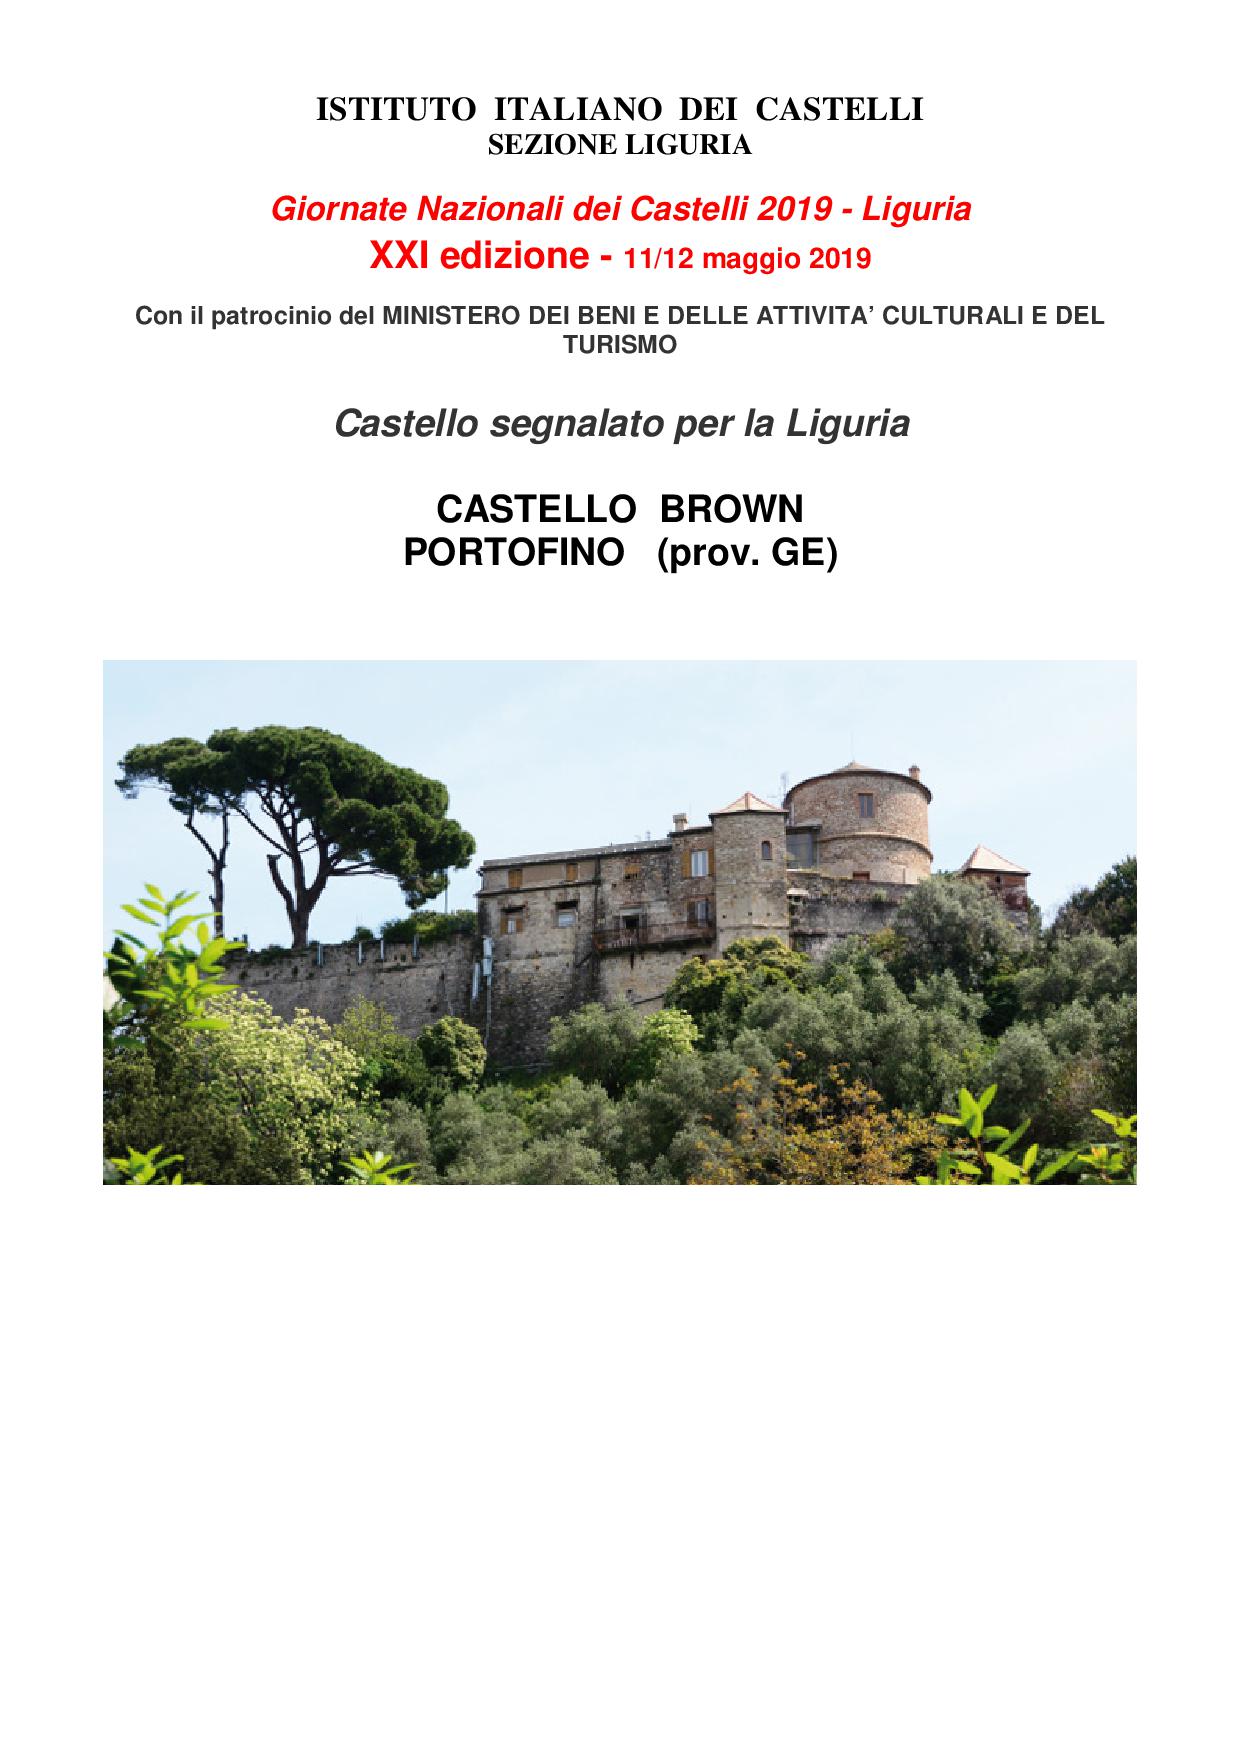 Giornate Nazionali dei Castelli 2019 – Liguria XXI edizione    Visita al Castello Brown Portofino (GE)